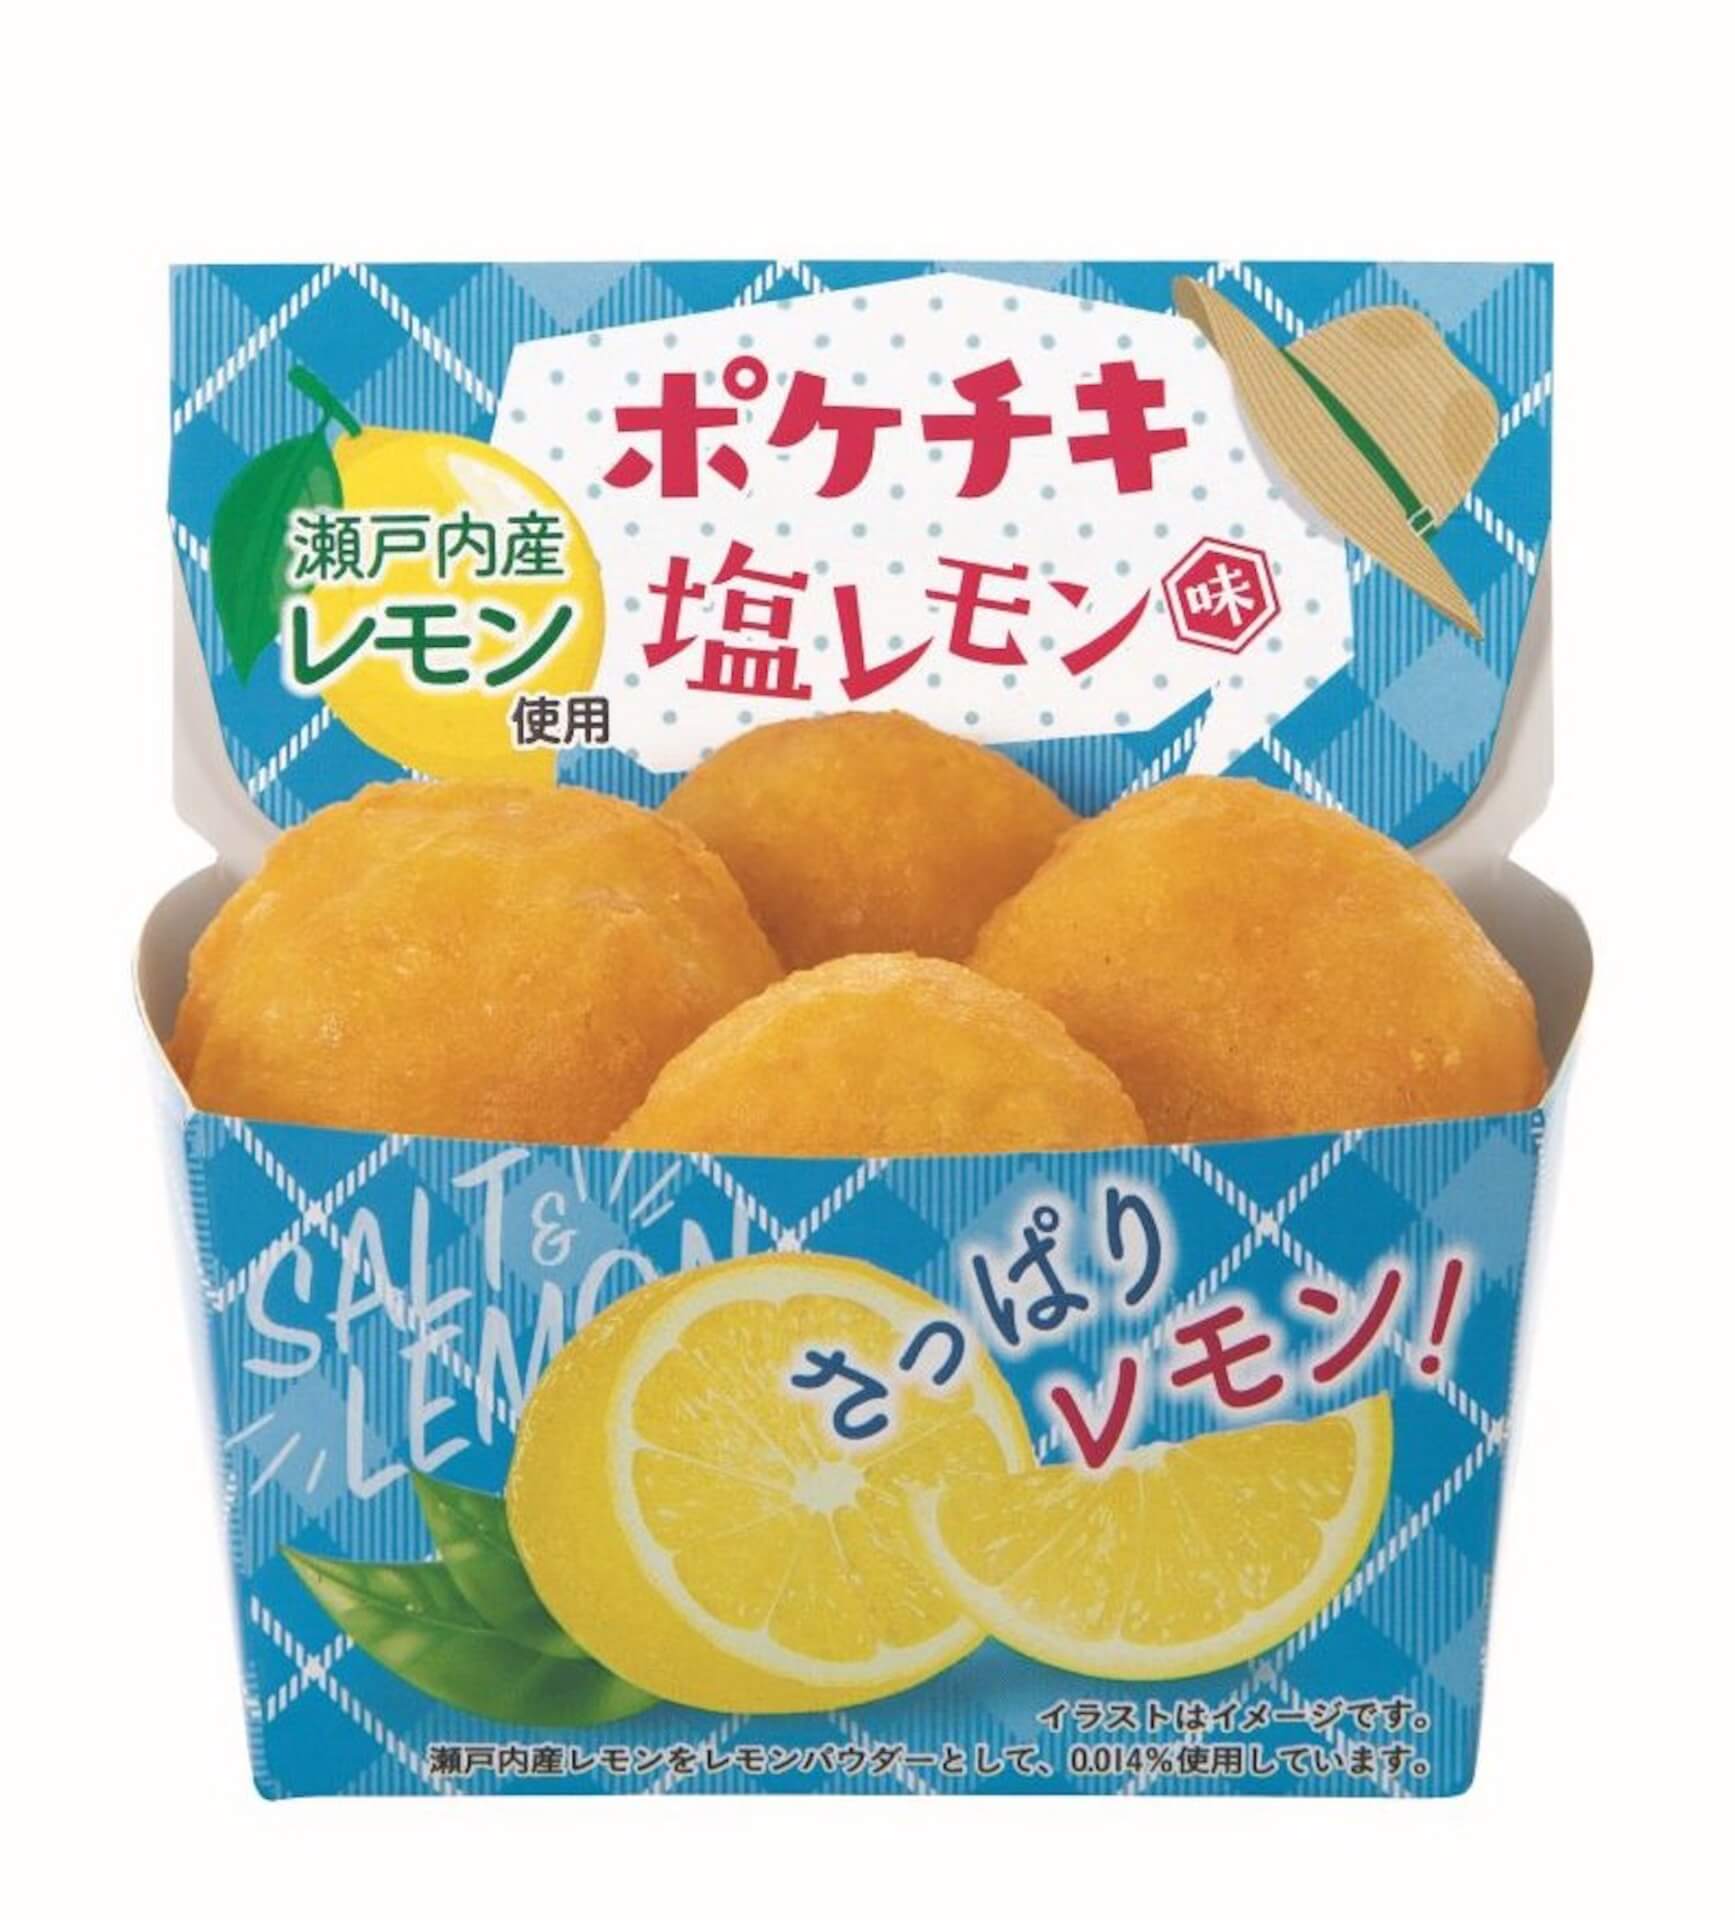 ファミマ「ポケチキ」に塩レモン味が新登場！真夏でも食欲をそそる爽やかな味わいに gourmet210823_pokechiki_2